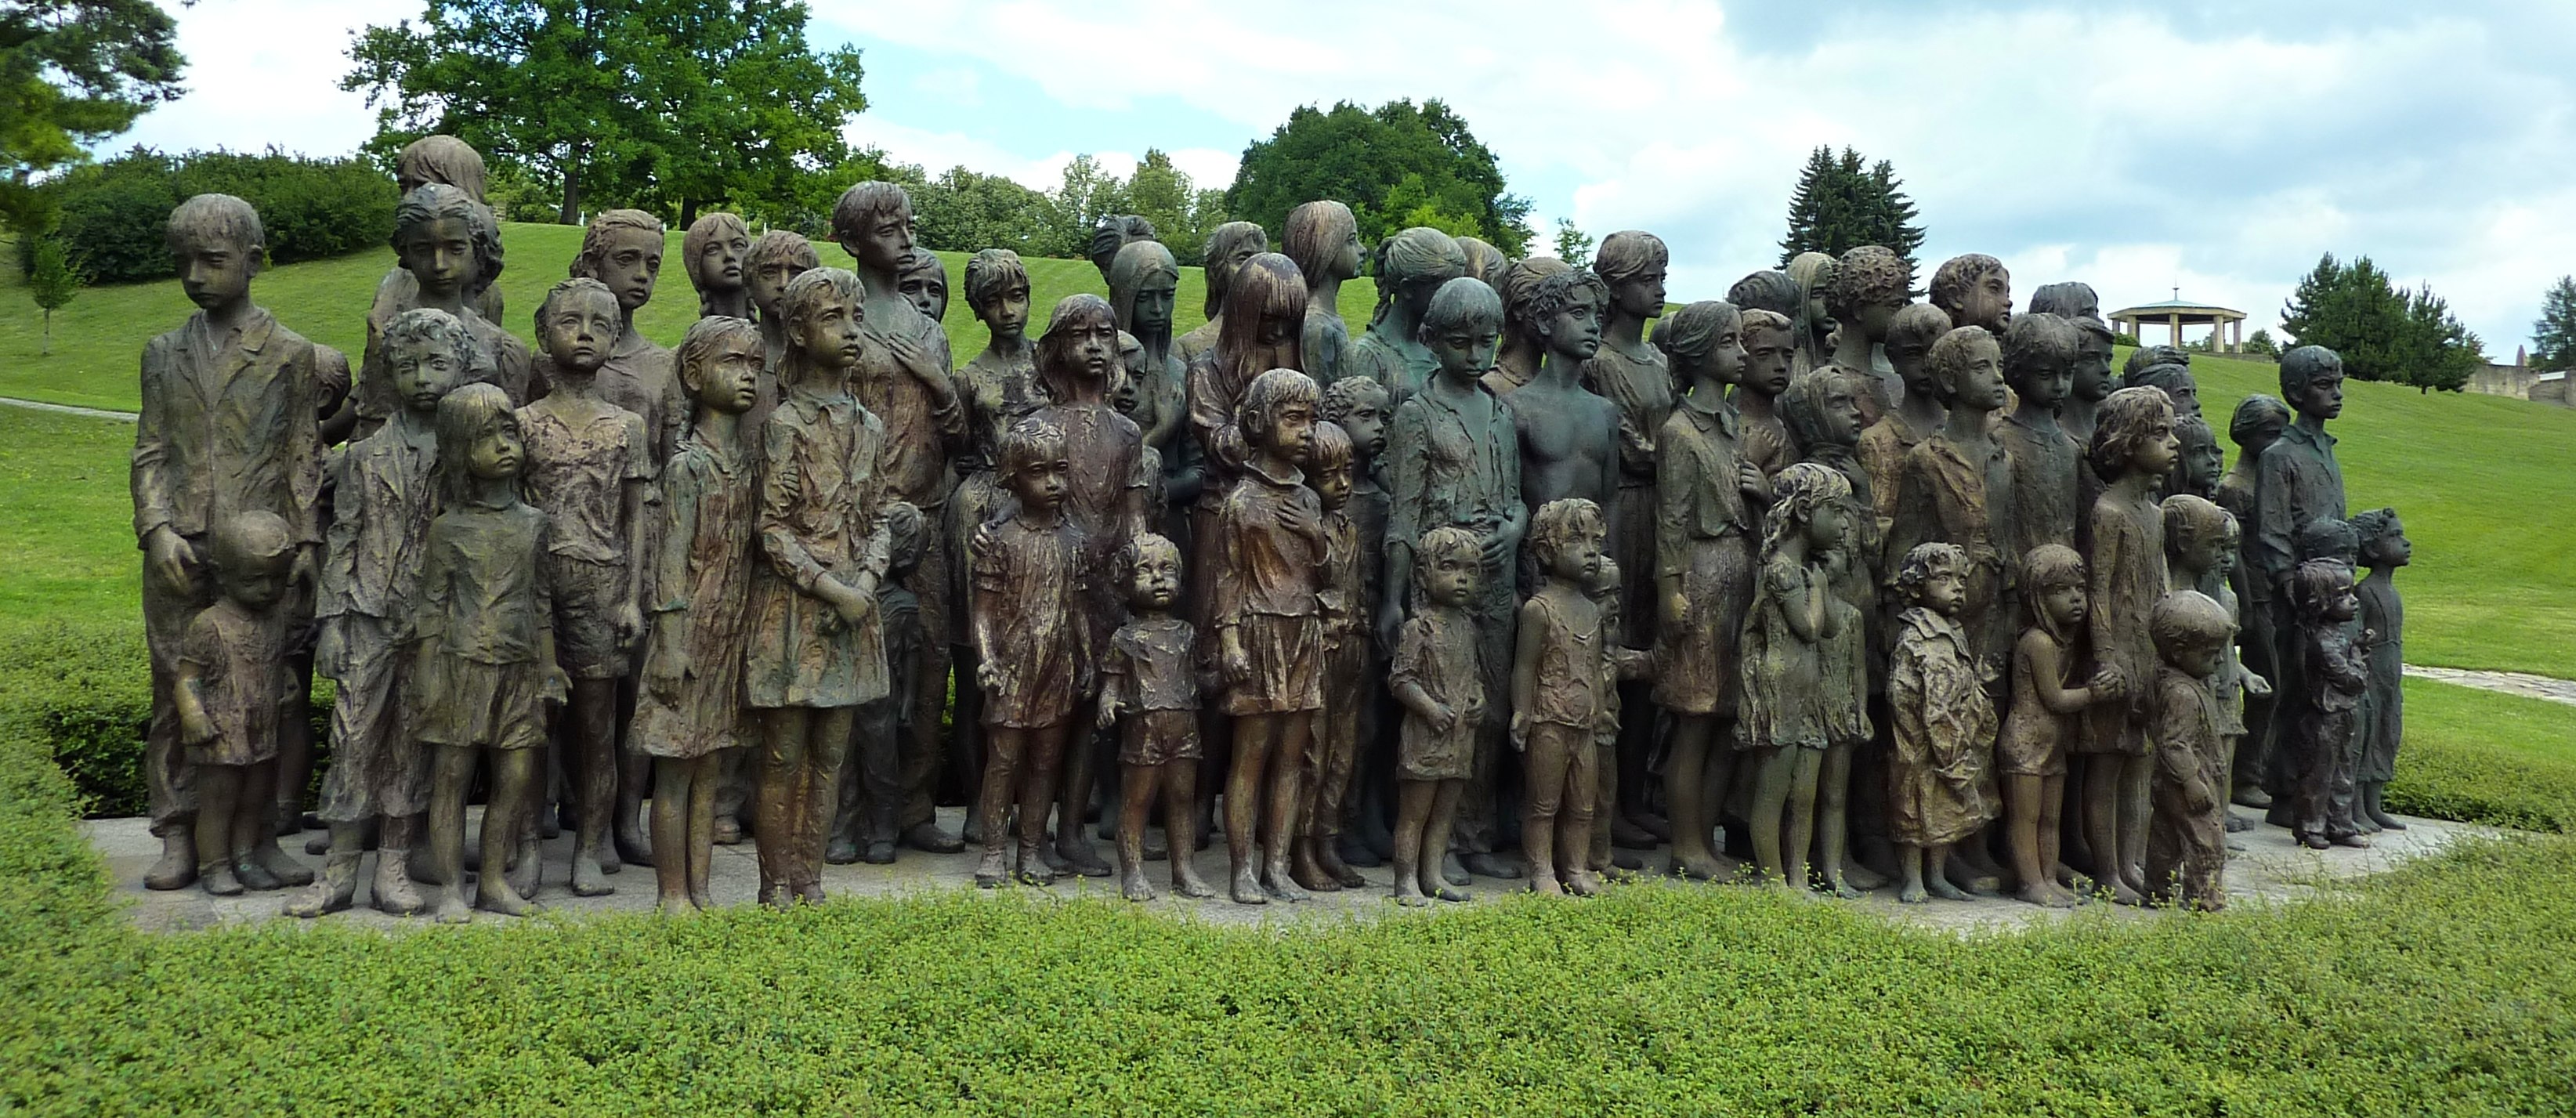 Лидице Чехия памятник детям